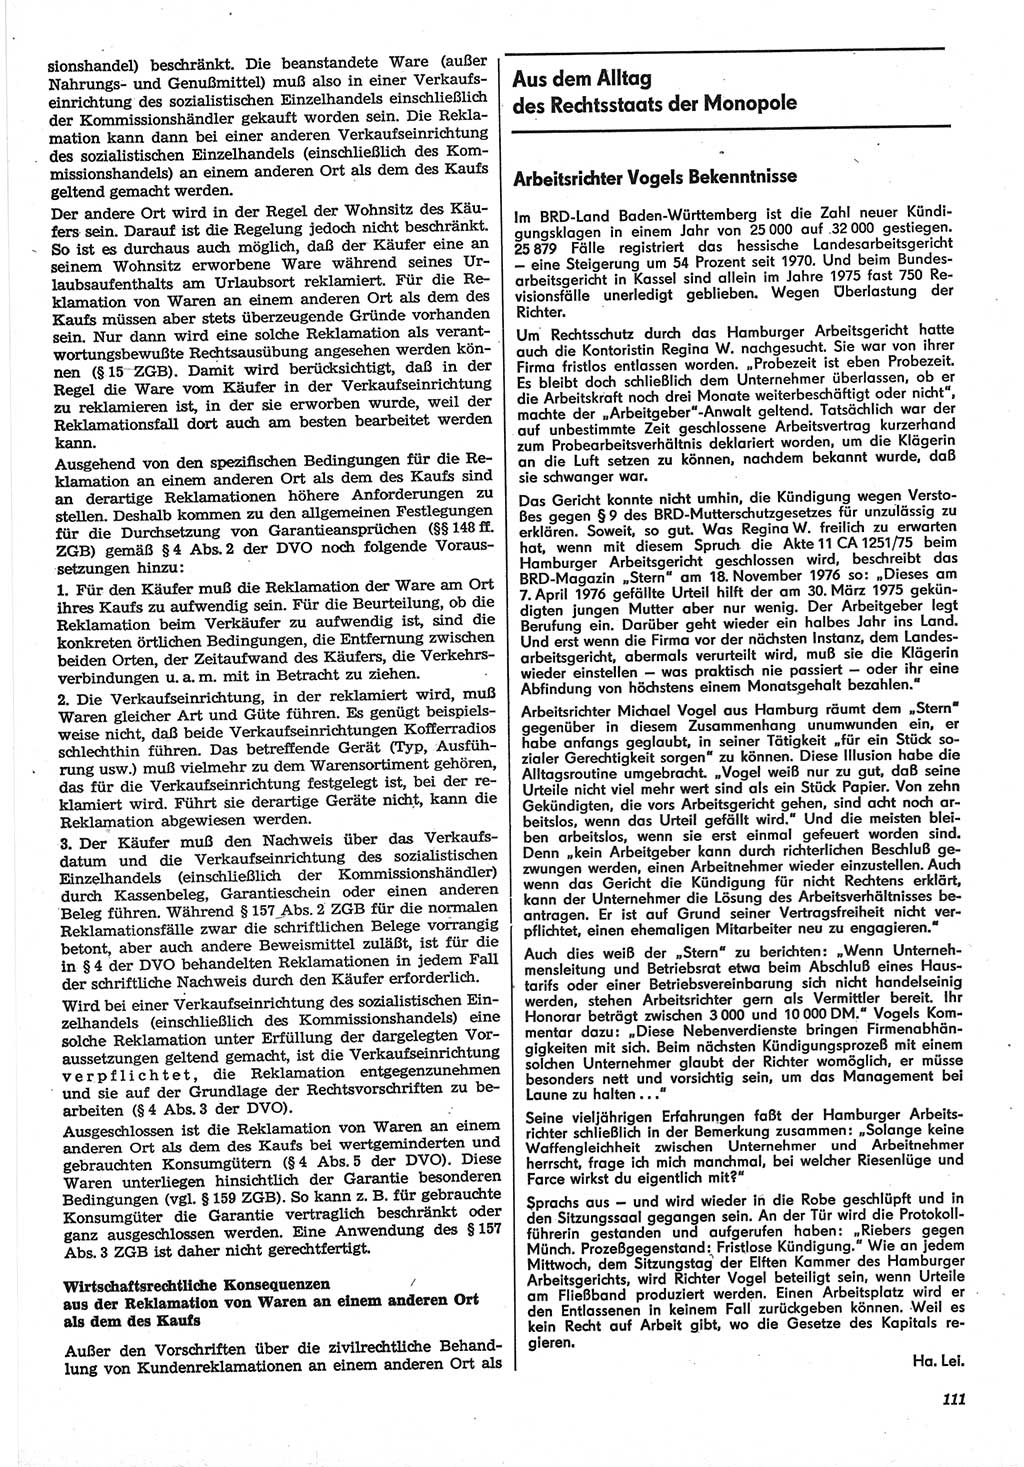 Neue Justiz (NJ), Zeitschrift für Recht und Rechtswissenschaft-Zeitschrift, sozialistisches Recht und Gesetzlichkeit, 31. Jahrgang 1977, Seite 111 (NJ DDR 1977, S. 111)